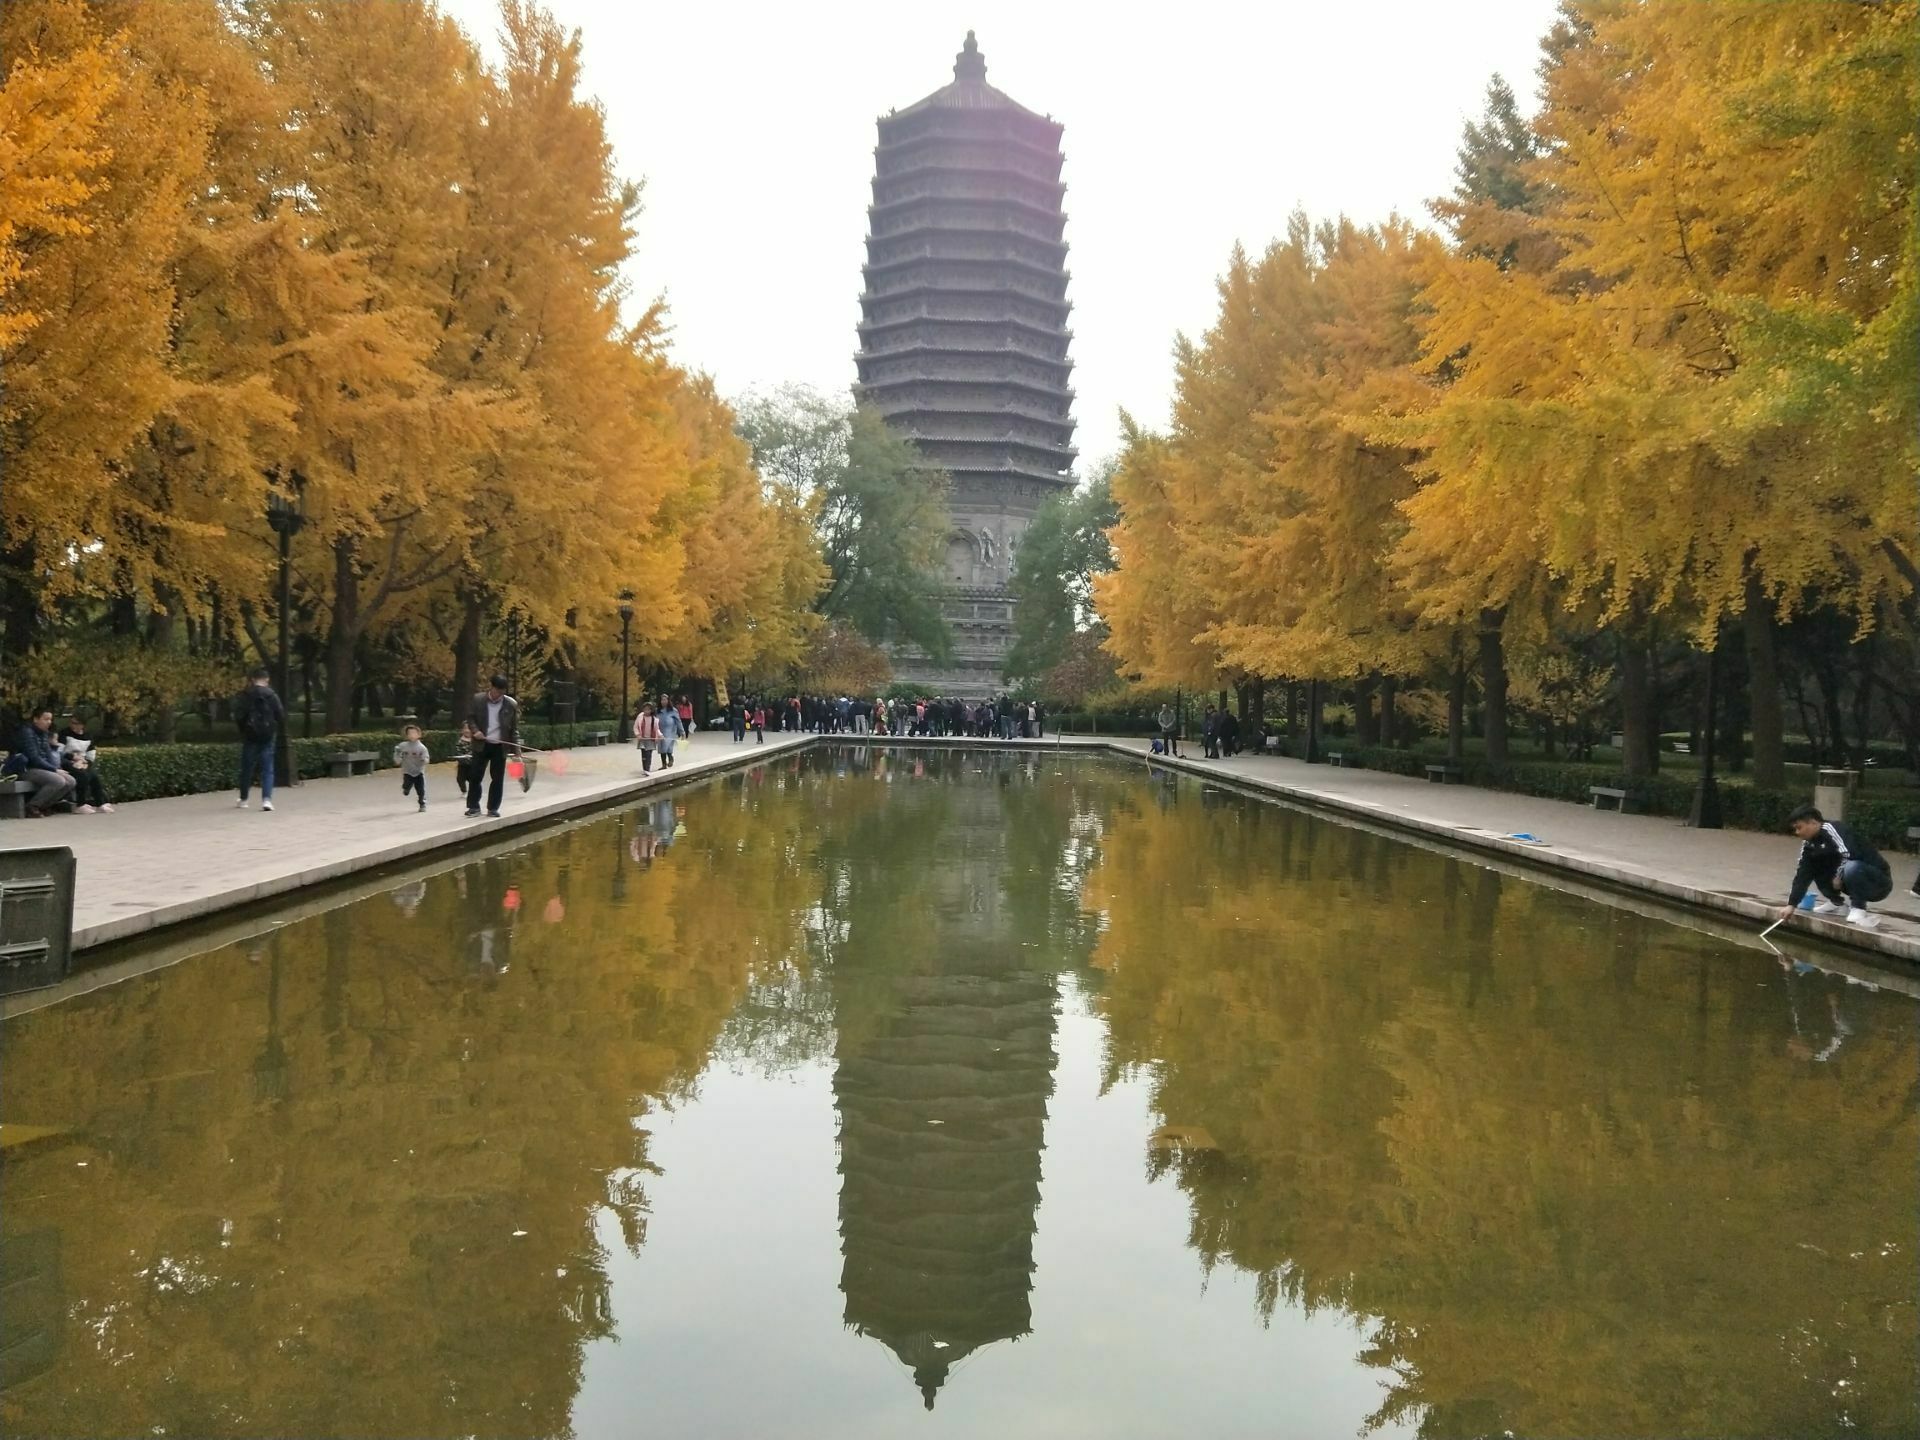 【携程攻略】北京玲珑塔(八里庄塔)景点,玲珑塔在北京玲珑塔公园内